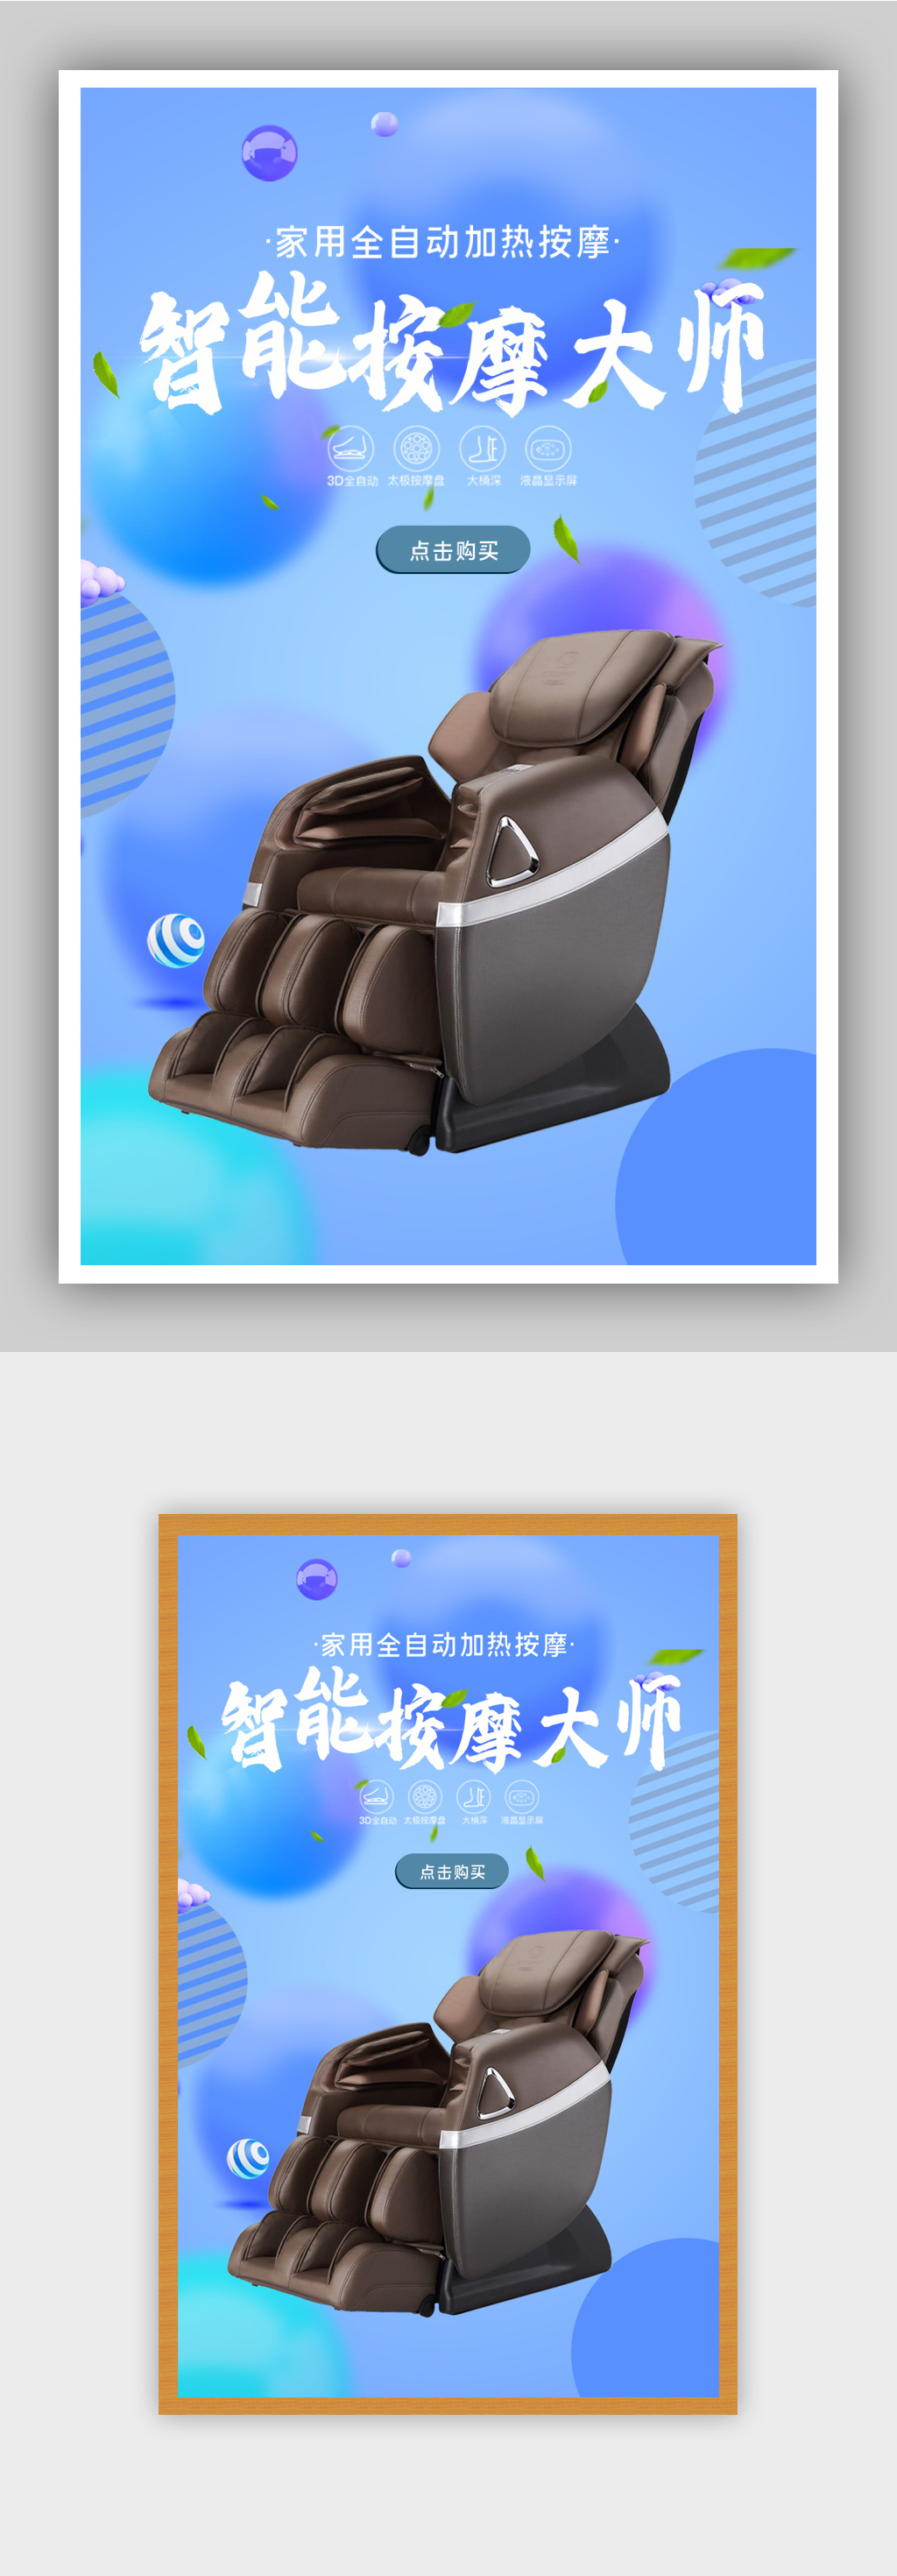 家用智能按摩椅电商背景海报